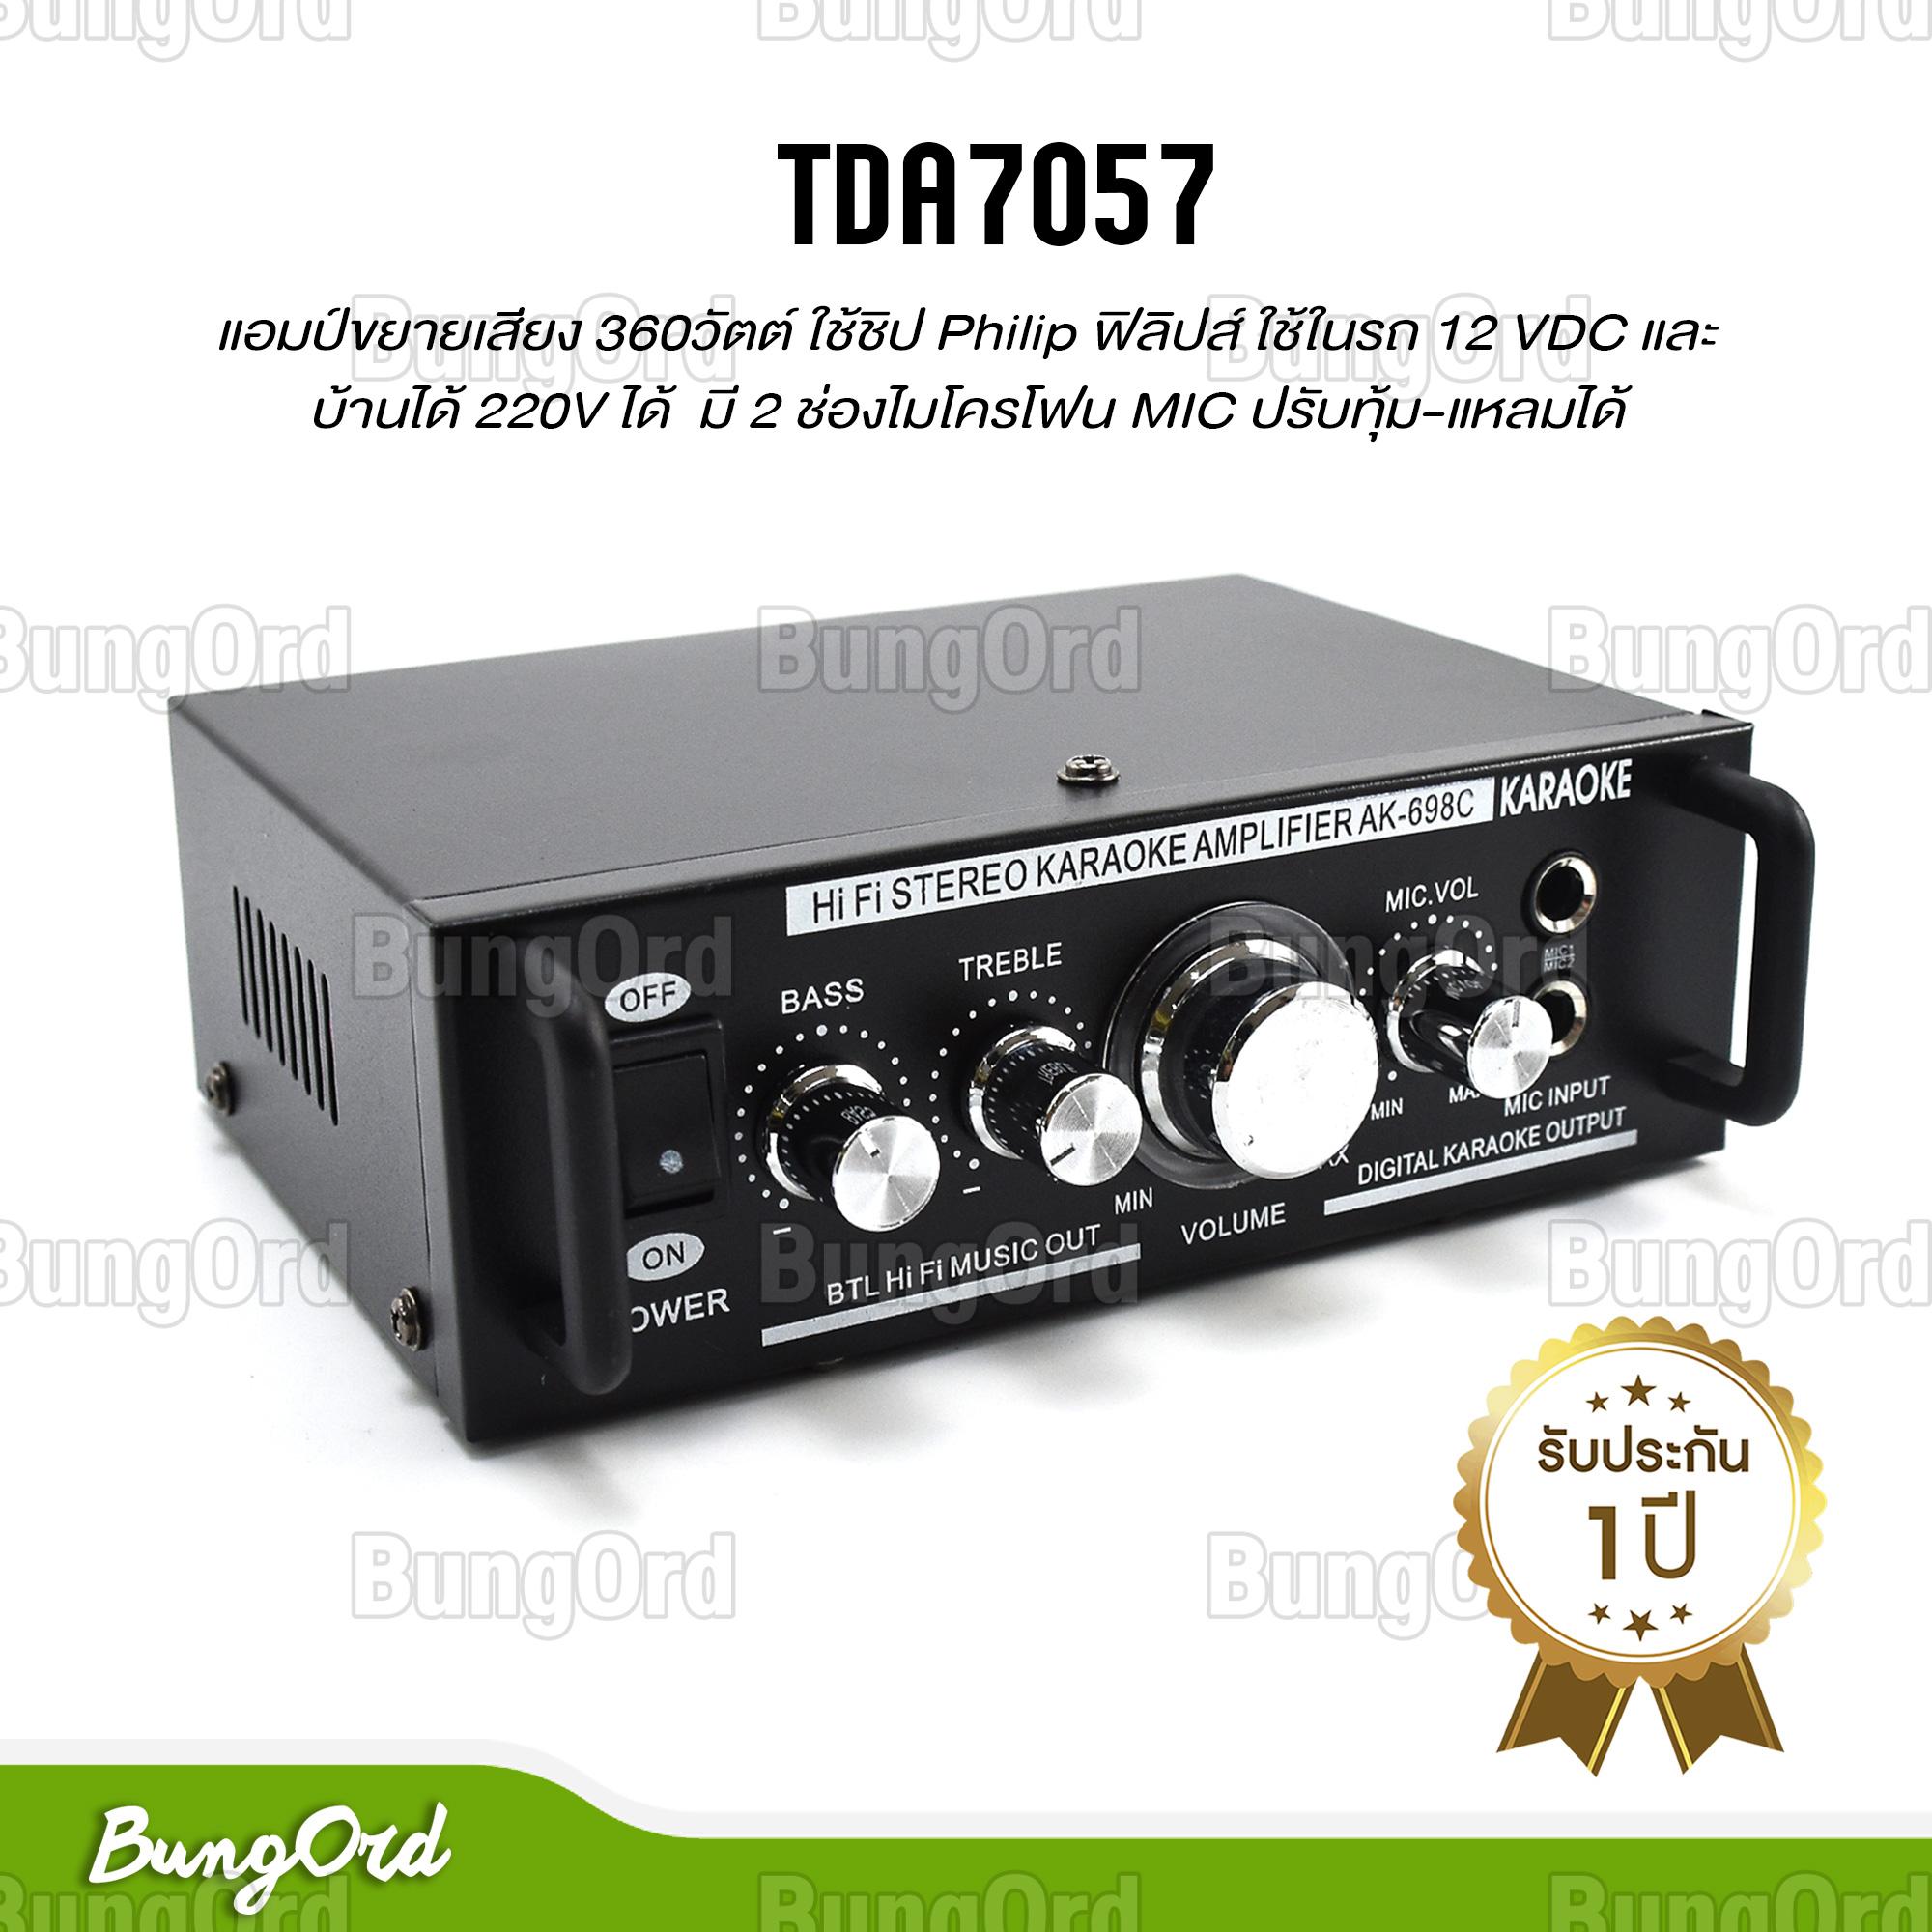 TDA7057 แอมป์ขยายเสียง 360 วัตต์ ใช้ชิป Philip ฟิลิปส์ ใช้ในรถ 12 VDC และบ้านได้ 220V ได้ มี 2 ช่องไมโครโฟน MIC ปรับทุ้ม-แหลมได้ เป็นแอมป์ Guitar Amplifier อัดได้เต็มกำลังวัตต์ อัดดอกลำโพงใหญ่ได้ Integrated Amplifier STEREO & HOME & CAR AUDIO